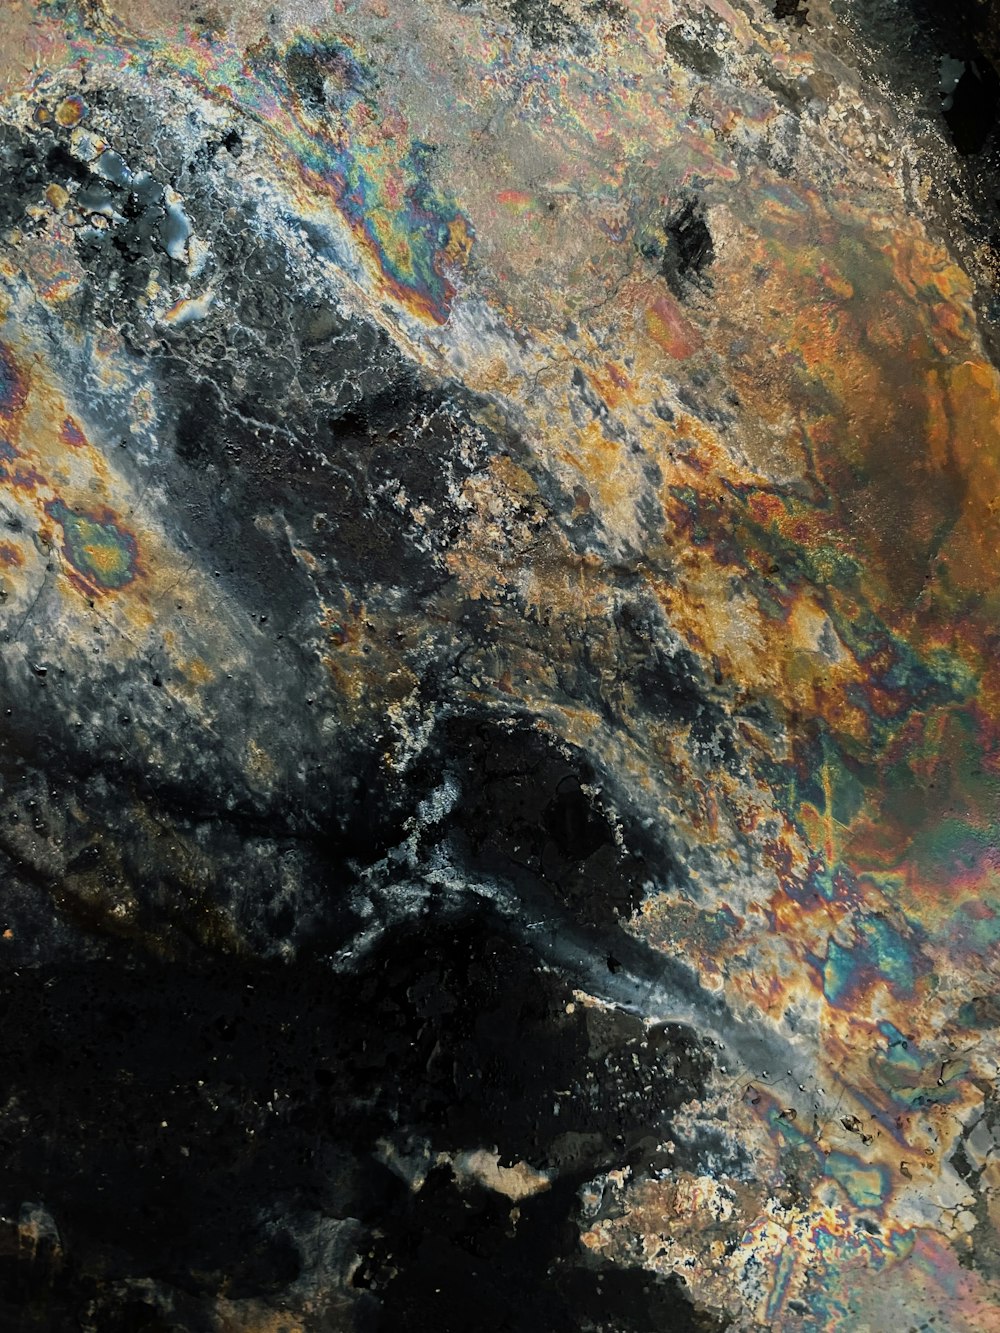 a close up of a rock with a lot of paint on it